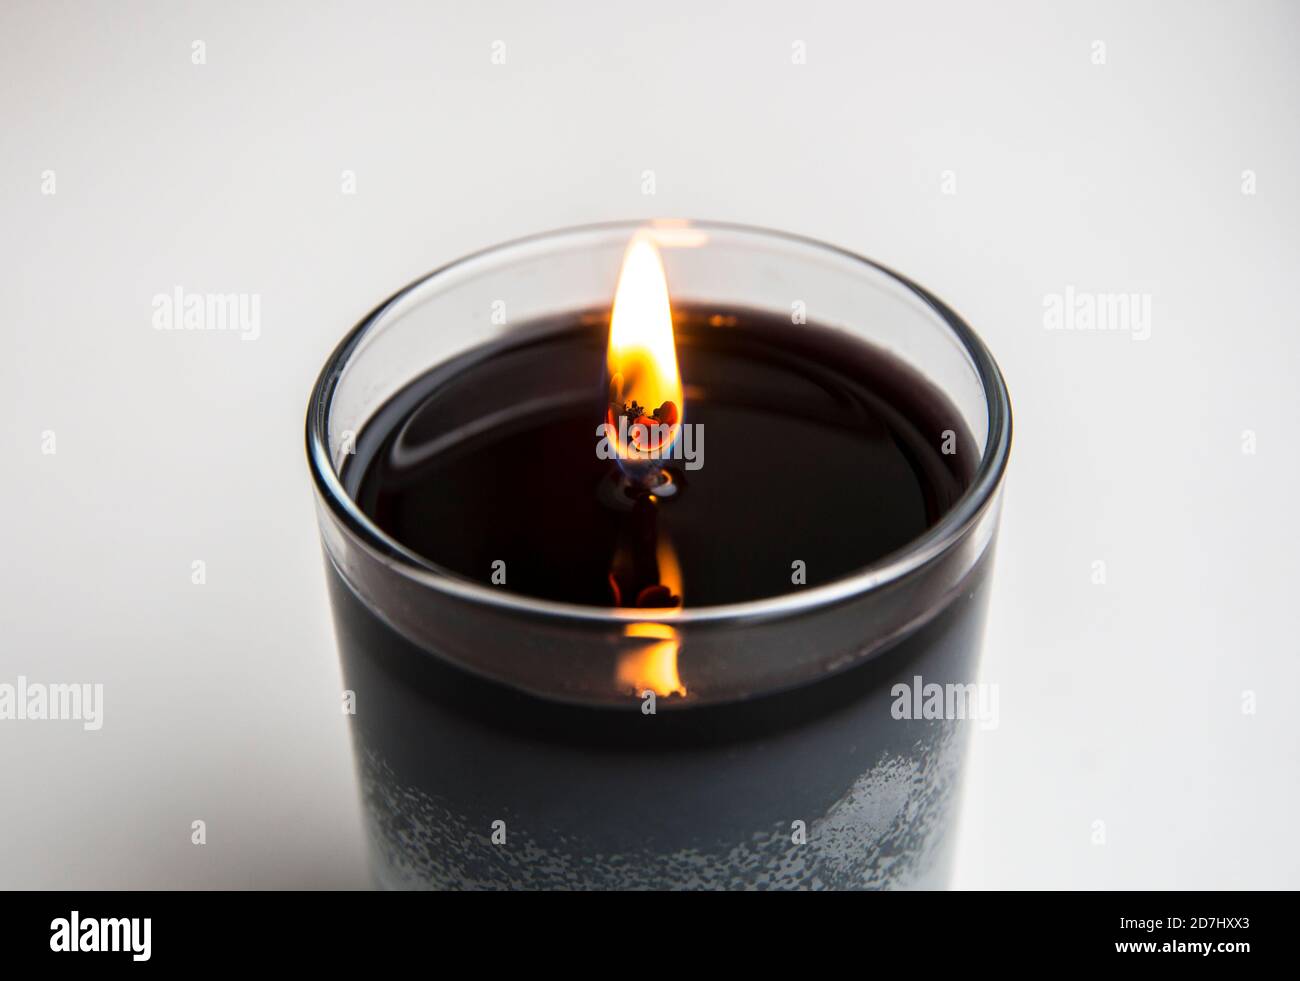 Al quemar la vela, deje que la capa superior se derrita a través de modo que la mecha durará más tiempo y no se ahogará en la cera. Foto de stock